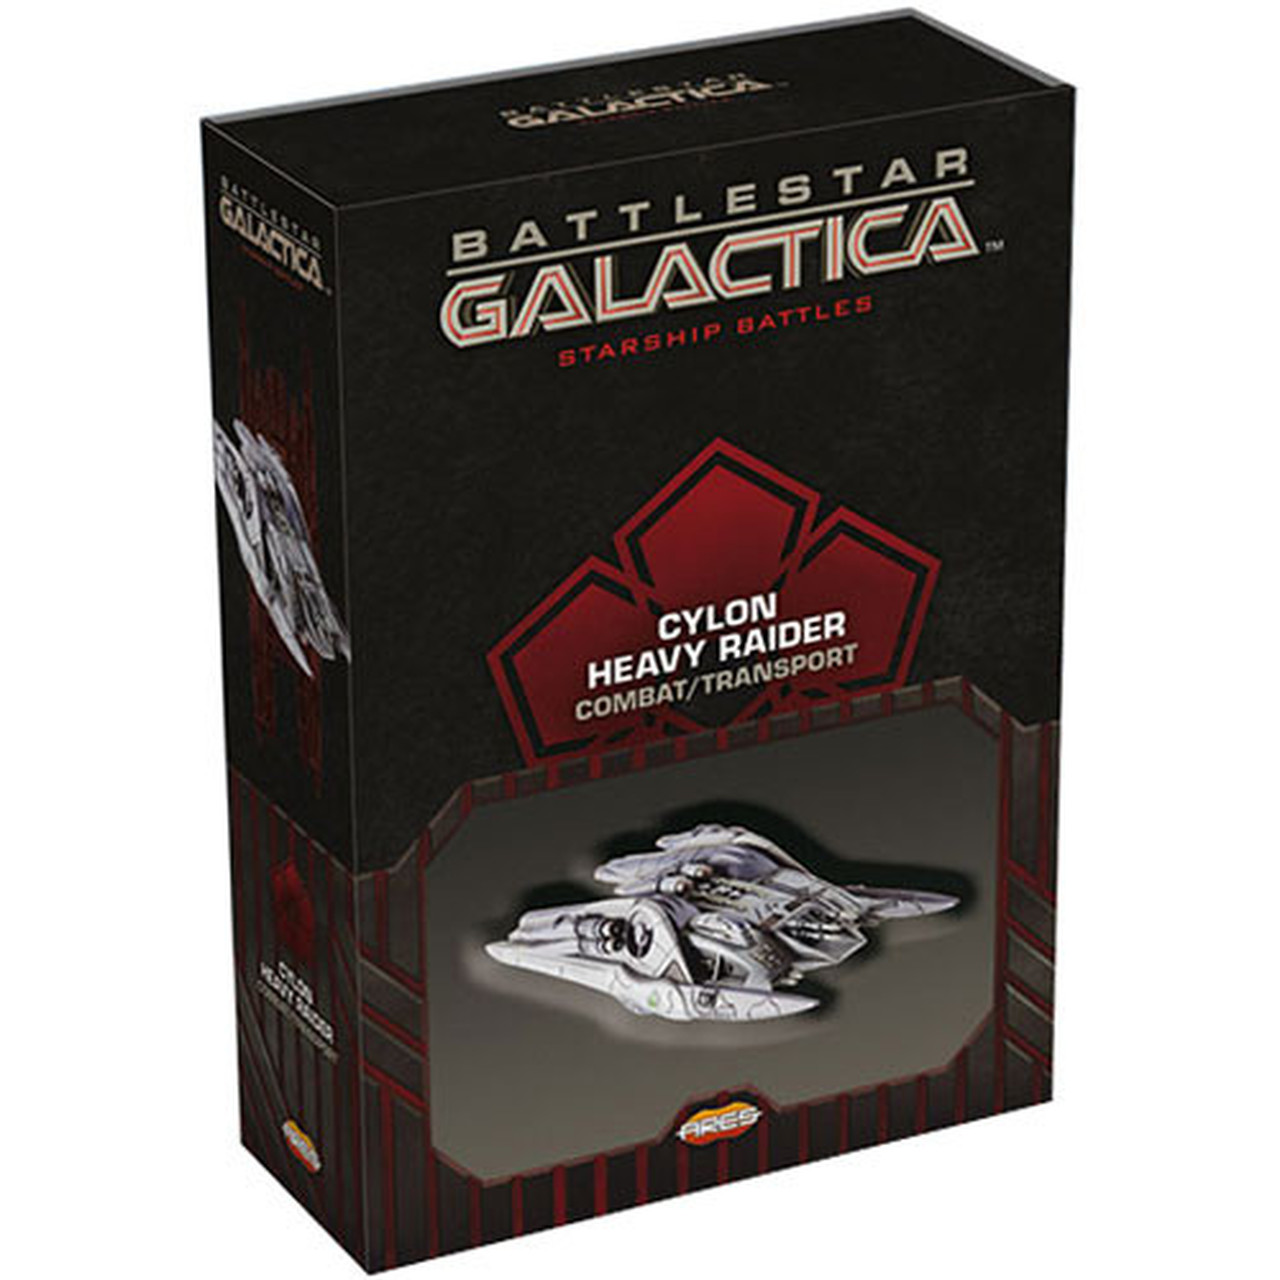 Battlestar Galactica - Starship Battles Uitbreiding: Cyclon Heavy Raider (COMBAT / TRANSPORT) (Bordspellen), Ares Games